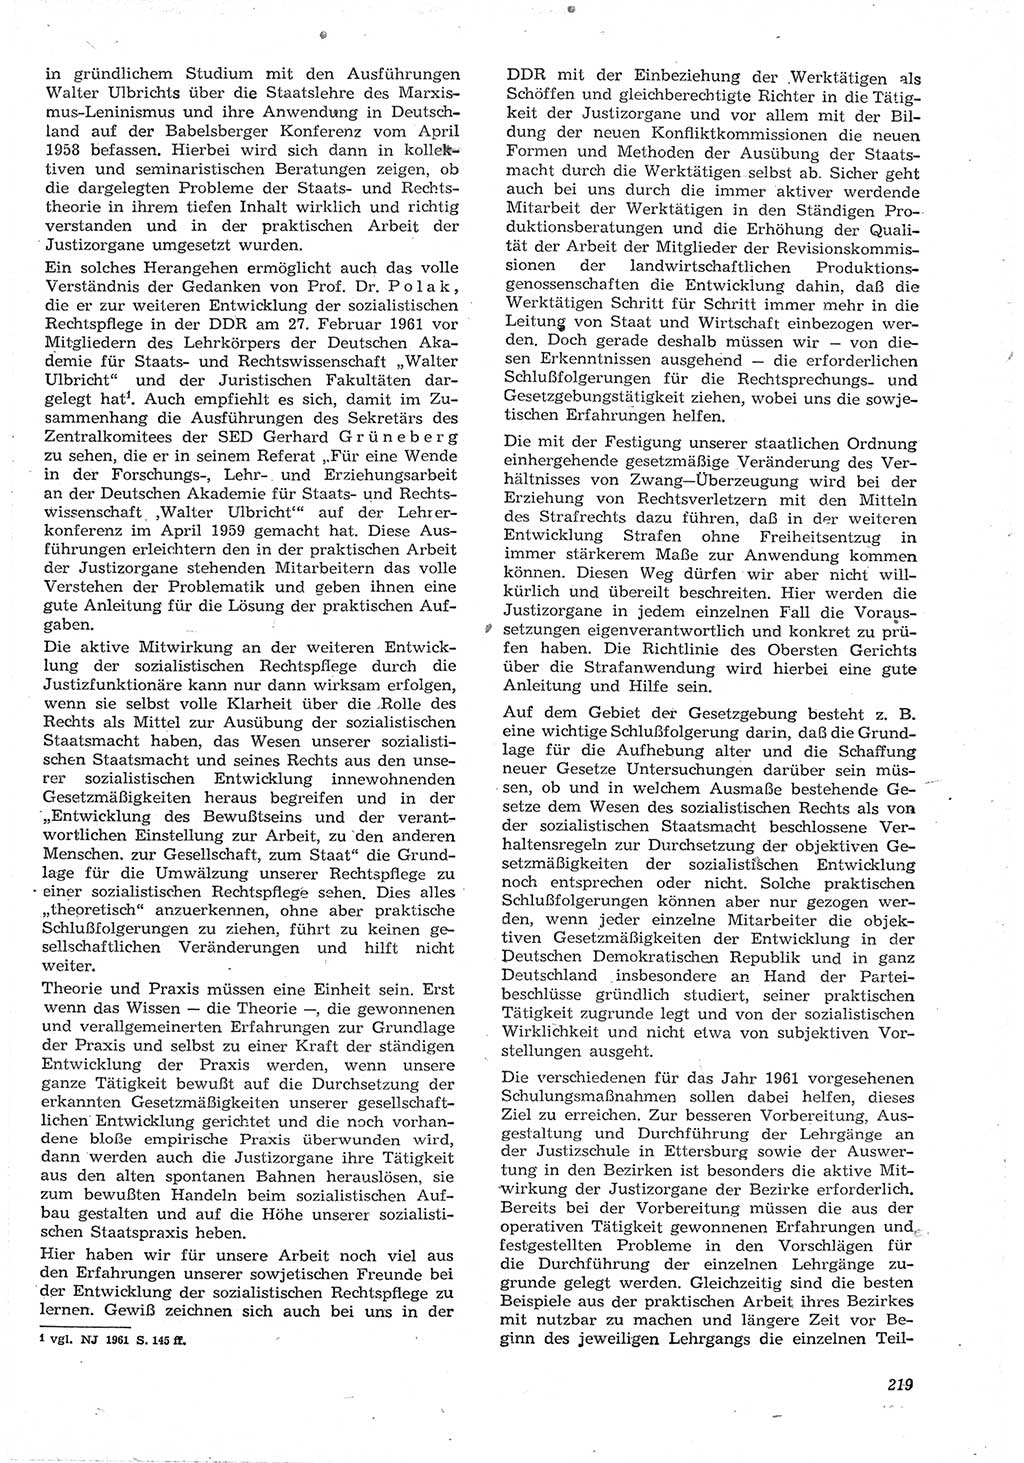 Neue Justiz (NJ), Zeitschrift für Recht und Rechtswissenschaft [Deutsche Demokratische Republik (DDR)], 15. Jahrgang 1961, Seite 219 (NJ DDR 1961, S. 219)